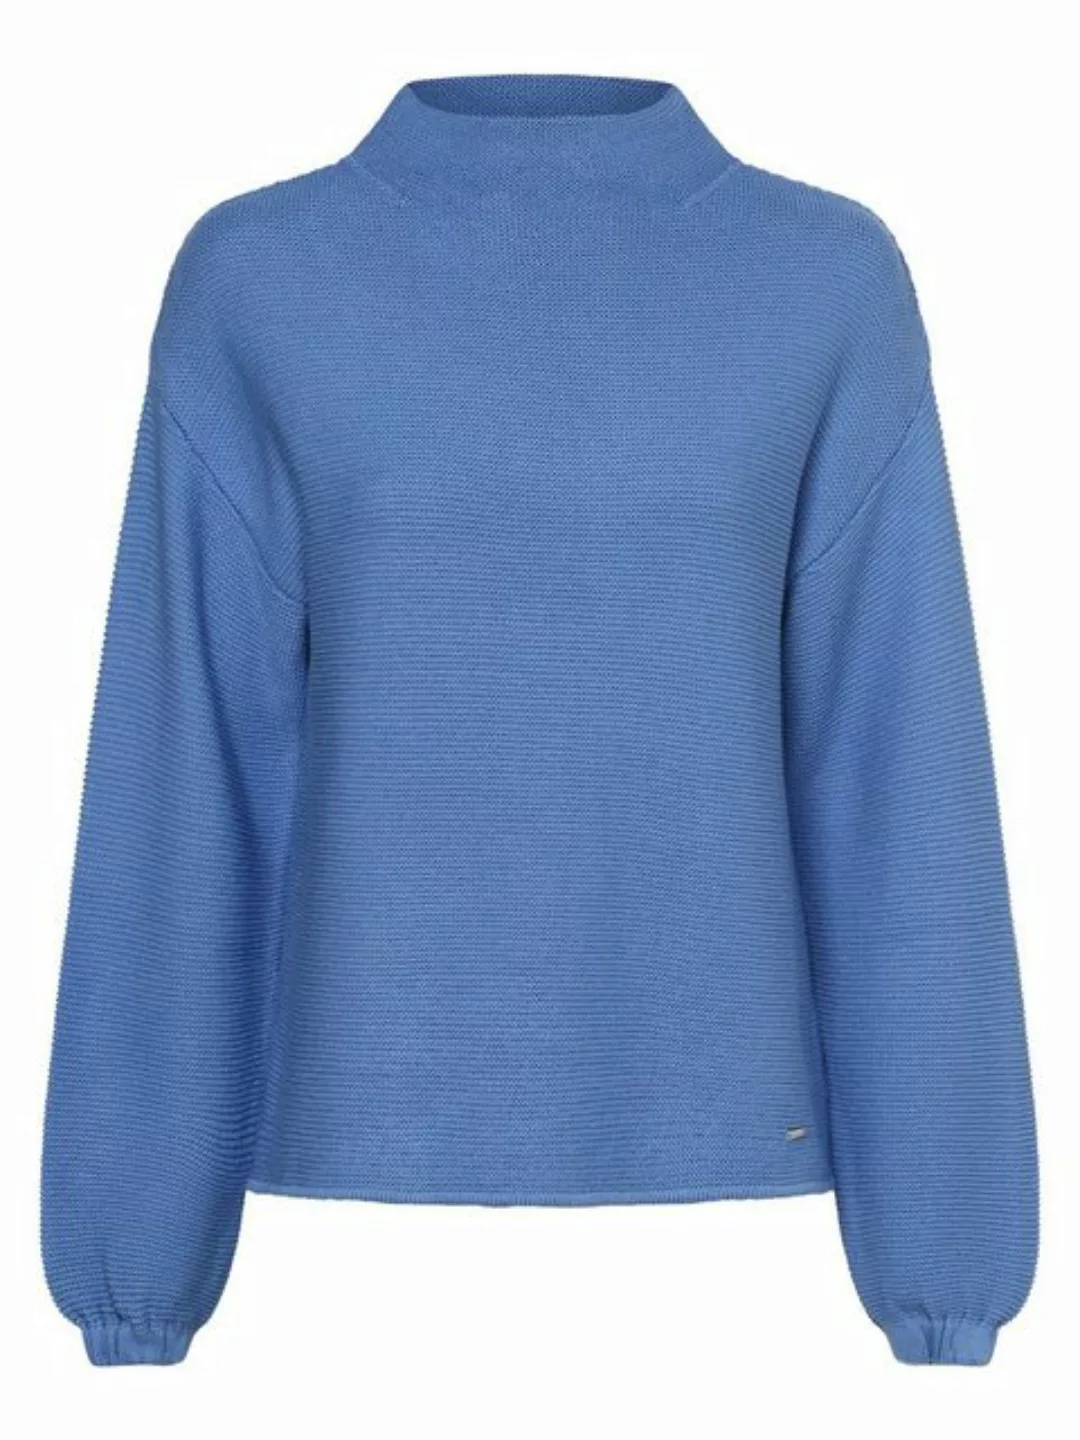 Pullover, soft azur blue, Herbst-Kollektion günstig online kaufen